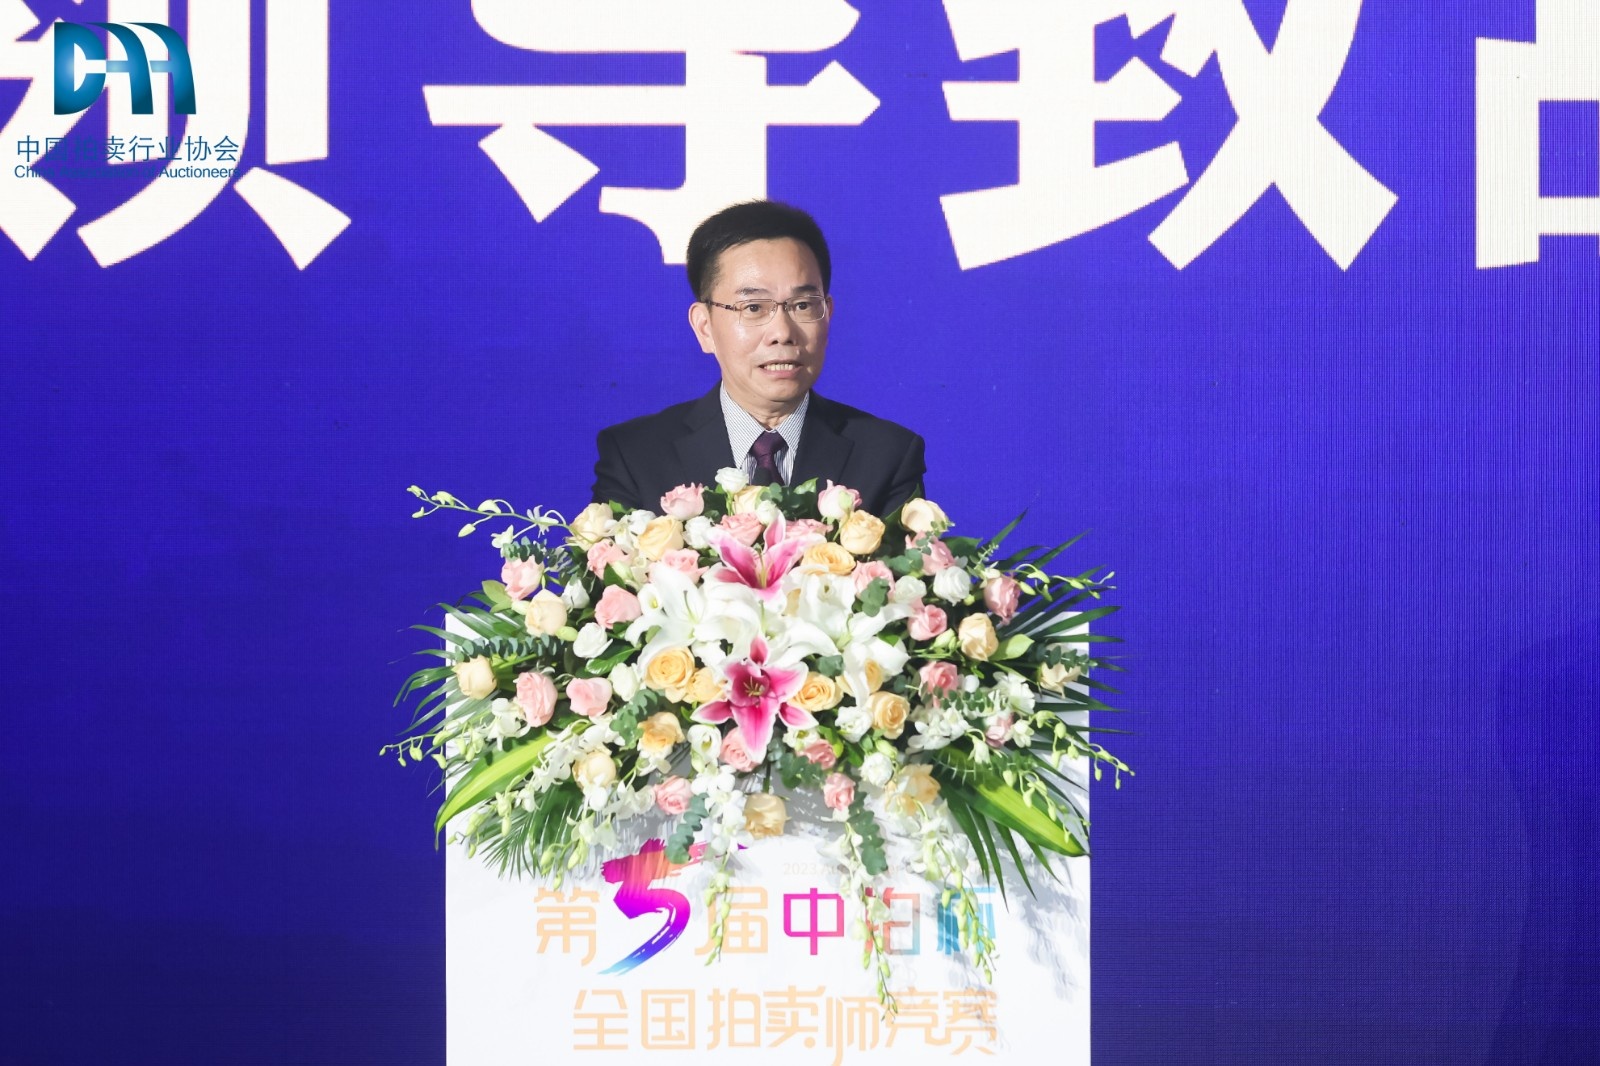 图1 中国拍卖行业协会会长黄小坚在颁奖典礼上致辞.jpg